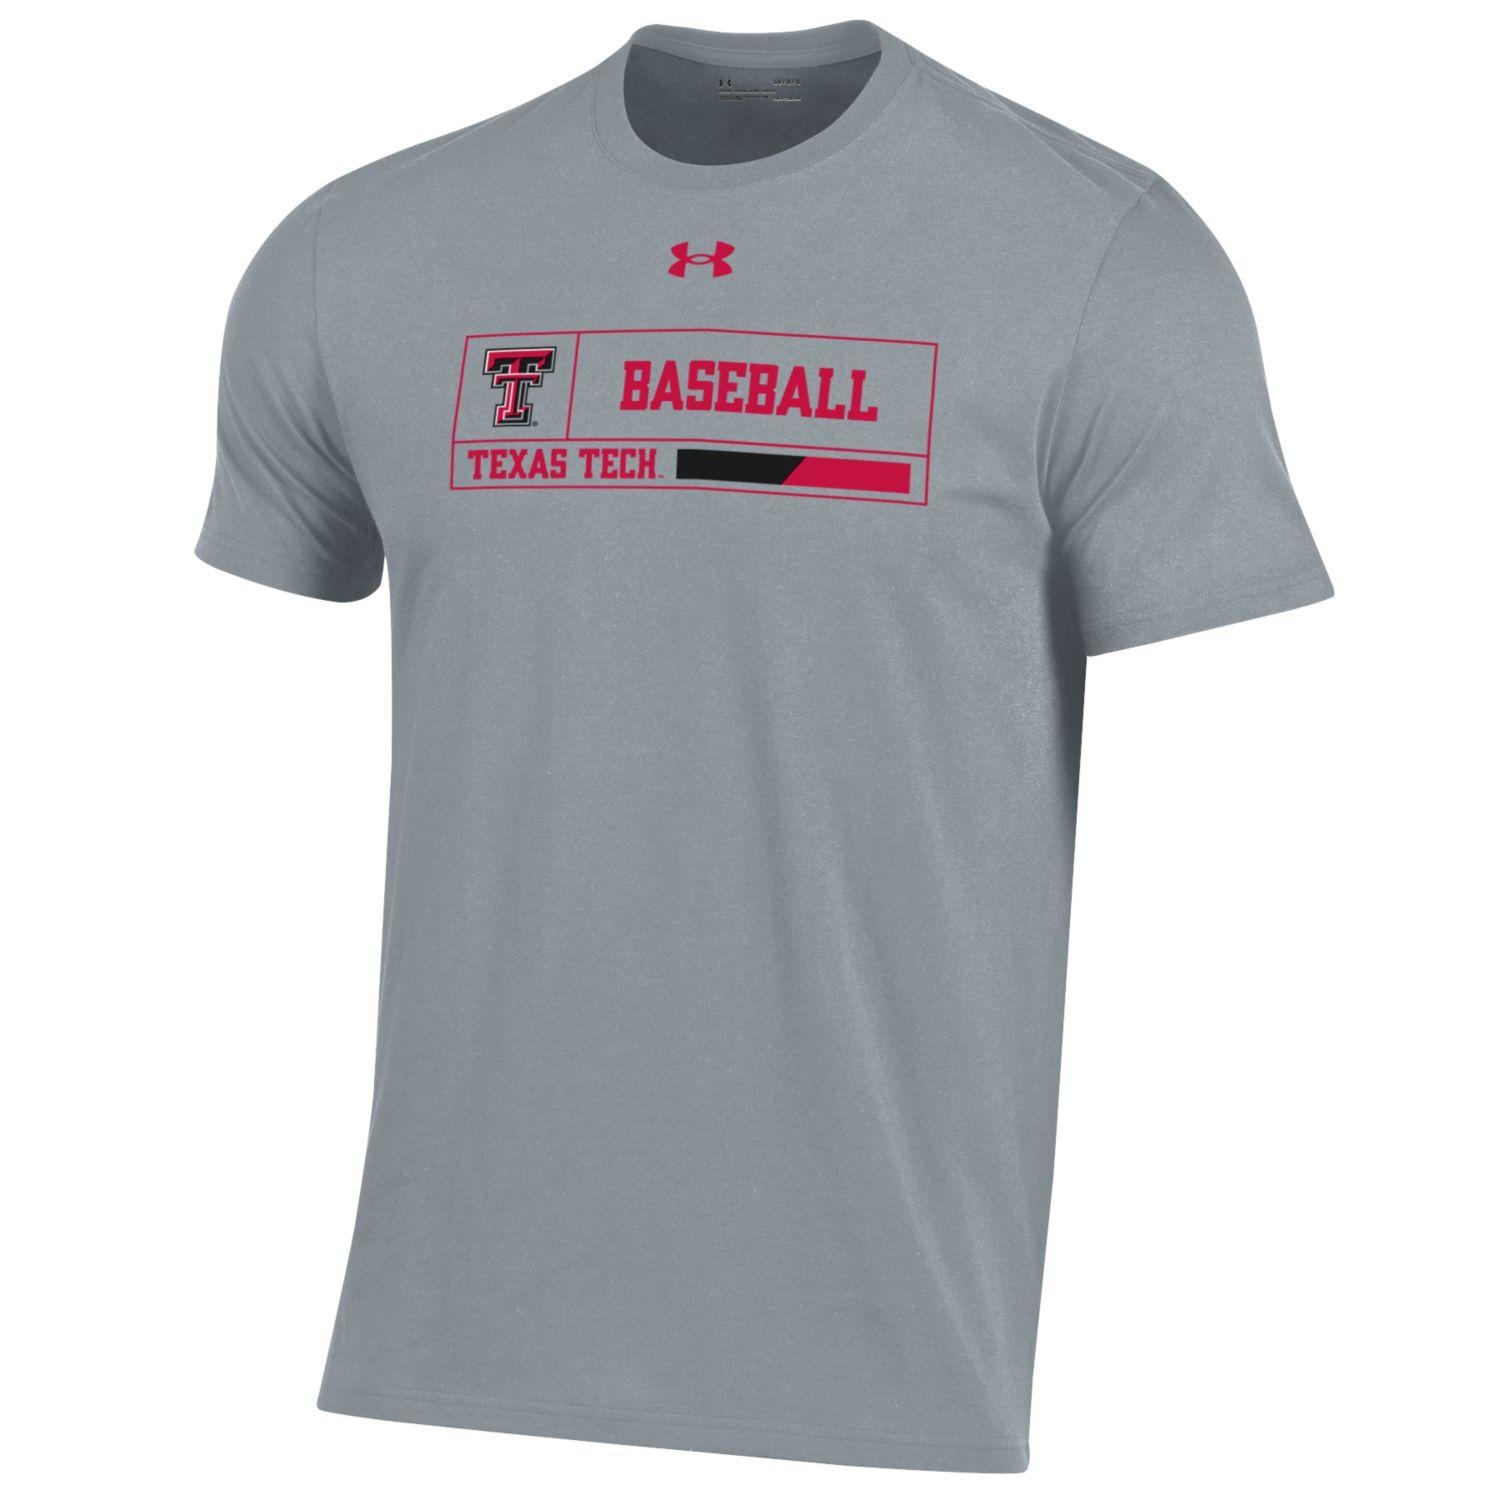 texas tech baseball shirt